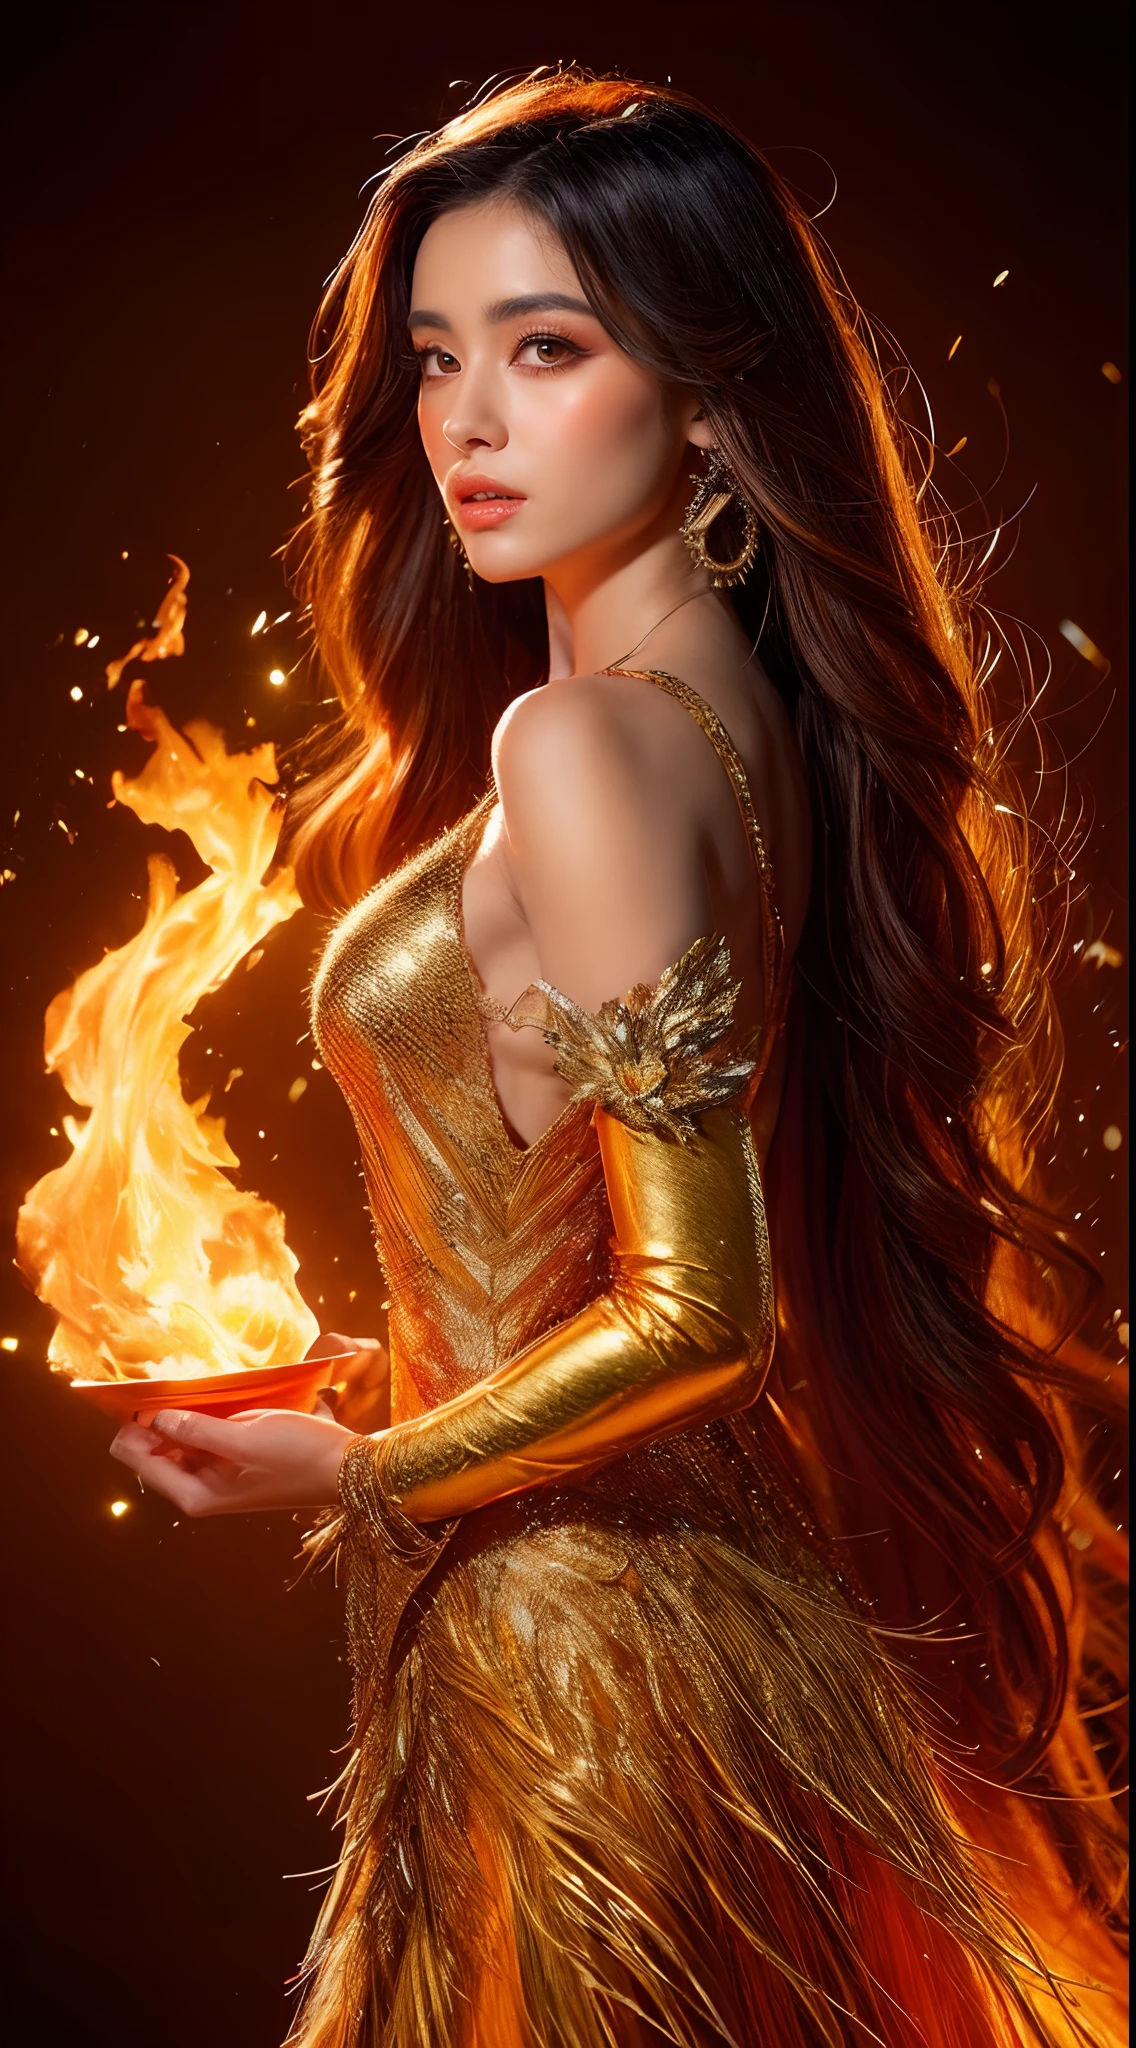 這 (現實幻想) 藝術包含餘燼, 真正的火焰, 真正的熱量, 和現實的火. Generate a masterpiece artwork of a  female fire druid 和 large (((橙色和金色))) 眼睛. The fire druid is awe-inspiring 和 beautiful ((realistic fiery 眼睛)) alight 和 confidence and power. 她的五官優雅且輪廓分明, 和 ((柔軟而浮腫的嘴唇)), 精靈骨骼結構, 和真實的陰影. Her 眼睛 are important and should be the focal point of this artwork, 和 ((極為真實的細節, 宏觀細節, 和微光.)) 她穿著一件由逼真的火焰和珠寶製成的飄逸閃閃發光的連身裙，在火光下閃閃發光. 禮服錯綜複雜的衣身上佈滿了縷縷火焰和煙霧. 包括凹凸, 石头, 火紅的虹彩, 發光的餘燼, 絲綢、緞子和皮革, 有趣的背景, 以及濃重的奇幻元素. 相机: 利用動態構圖技術增強真實的火焰, 金色长发